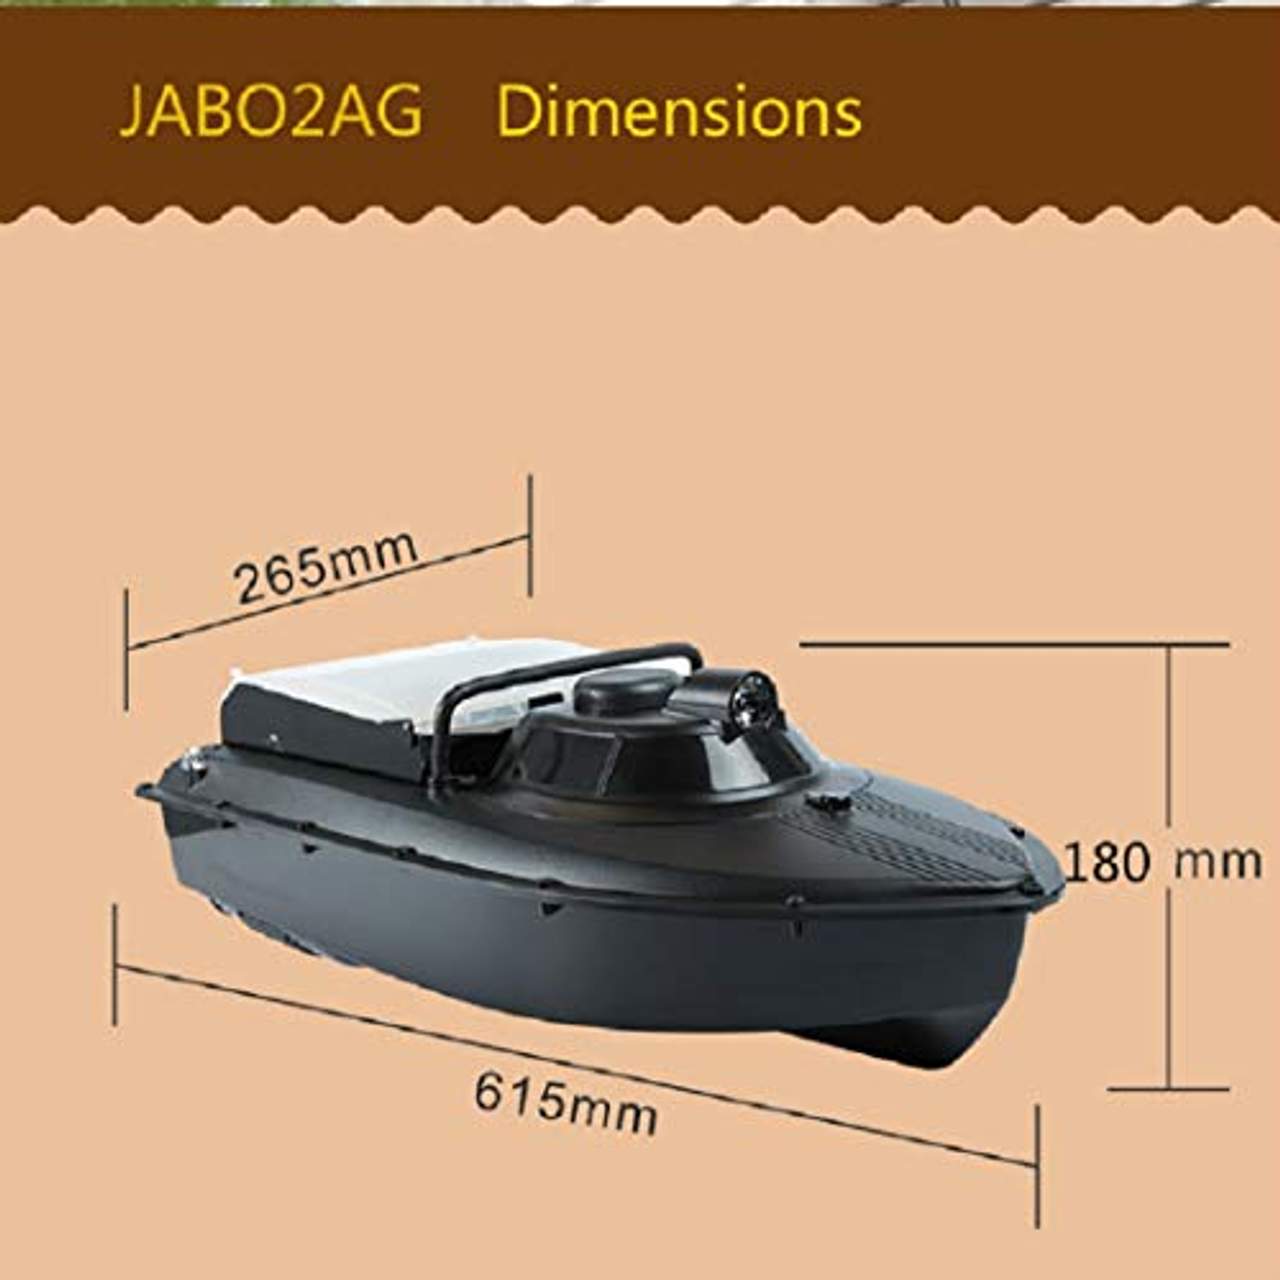 chuck & blair Jabo 2AG-10A Automatische Navigation Futterboot Köderboot